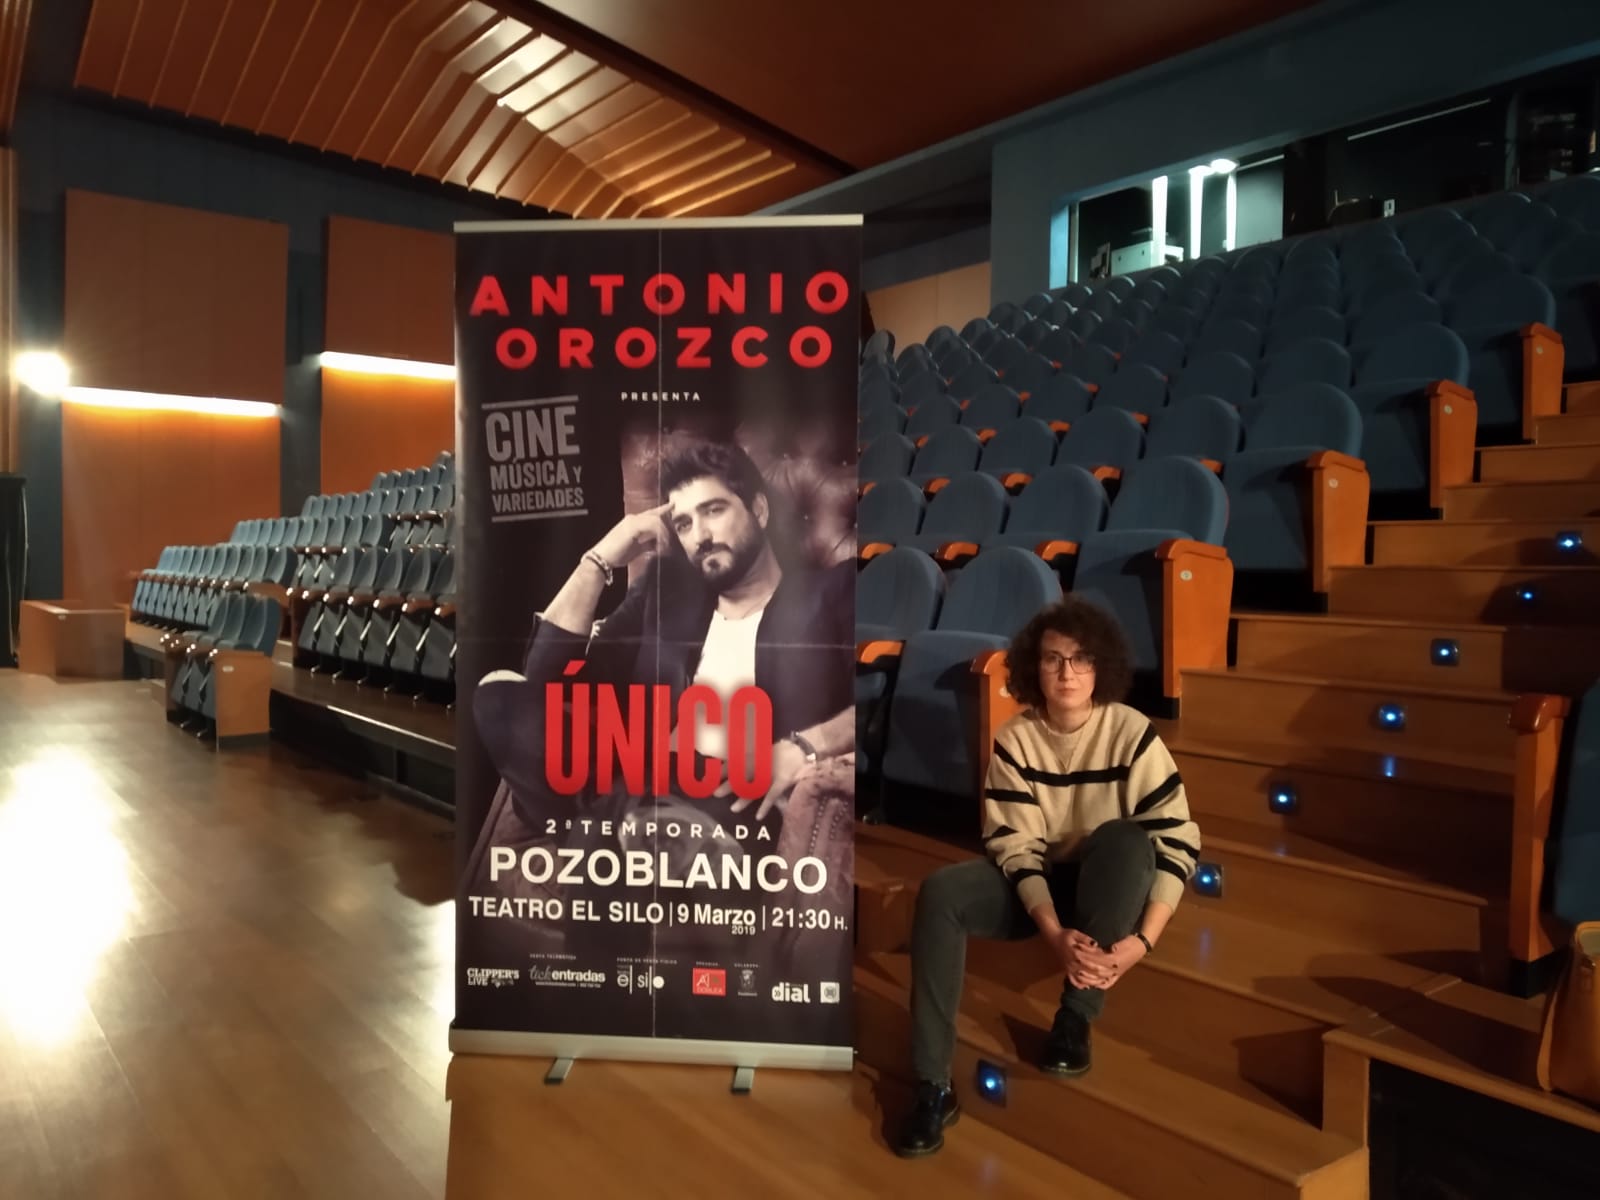 Antonio Orozco abrirá la programación de primavera del Teatro El Silo con su gira “Único” 1